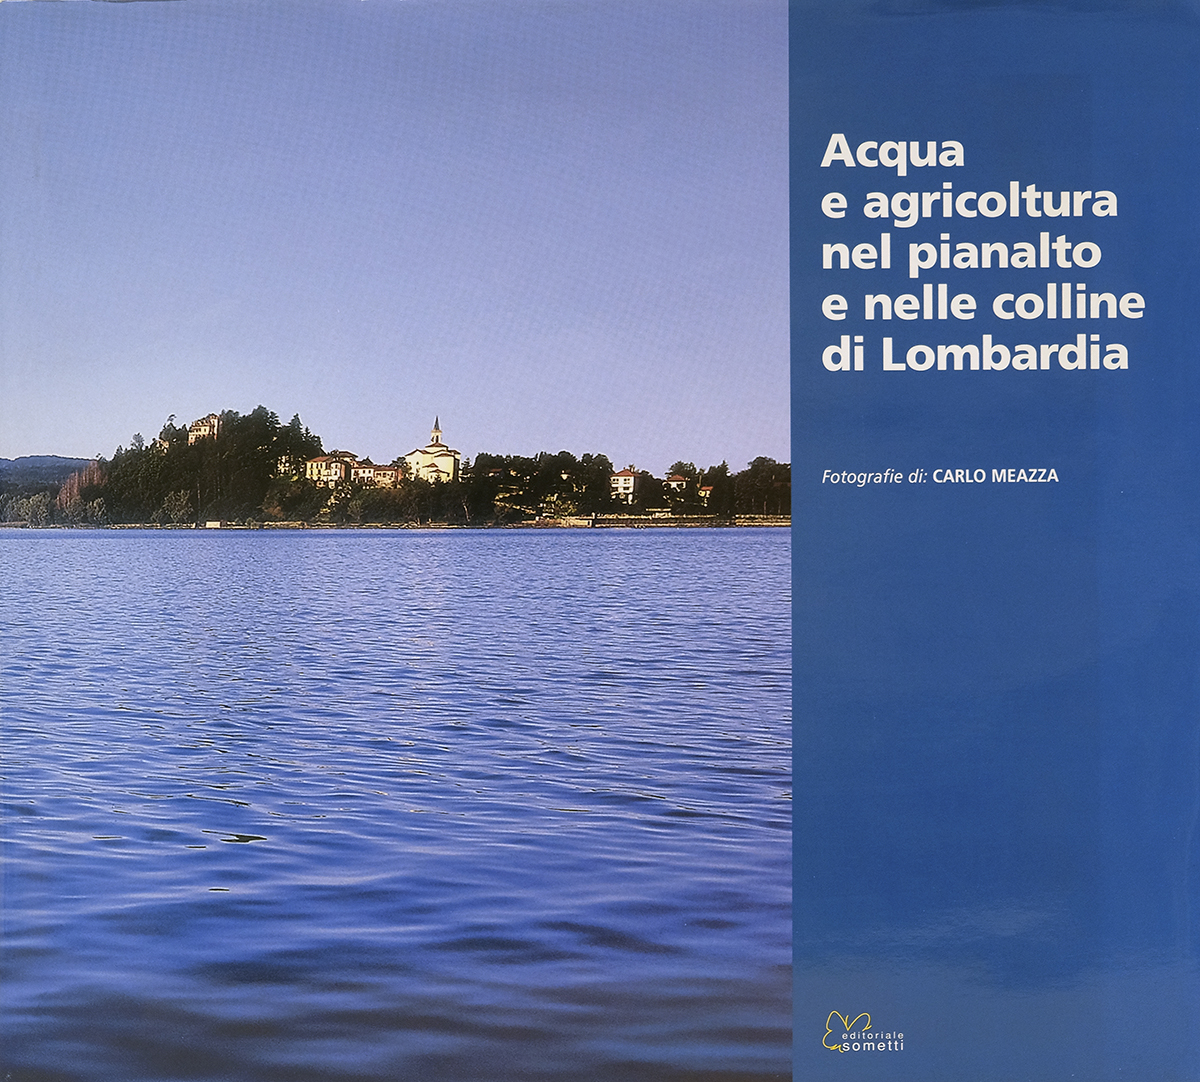 Acqua e agricoltura nel pianalto e nelle colline di Lombardia